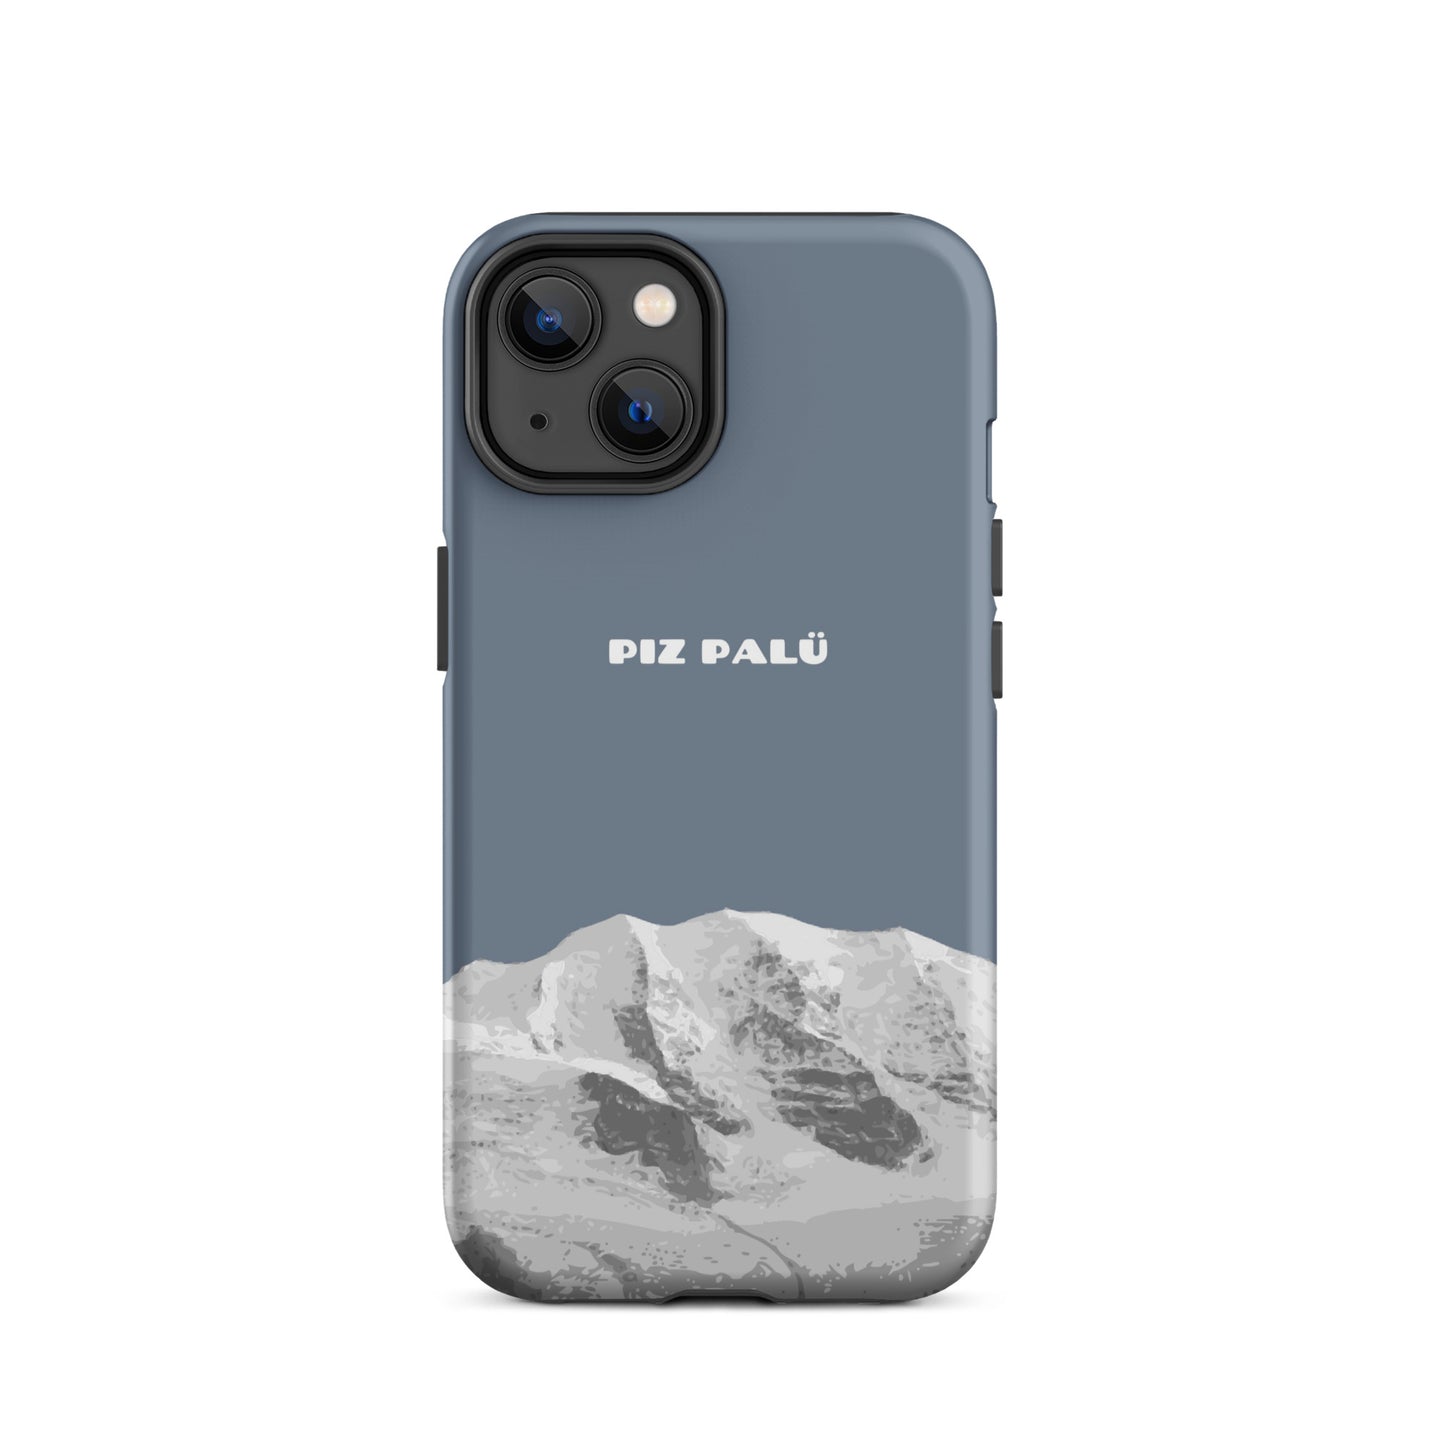 Hülle für das iPhone 14 von Apple in der Farbe Schiefergrau, dass den Piz Palü in Graubünden zeigt.